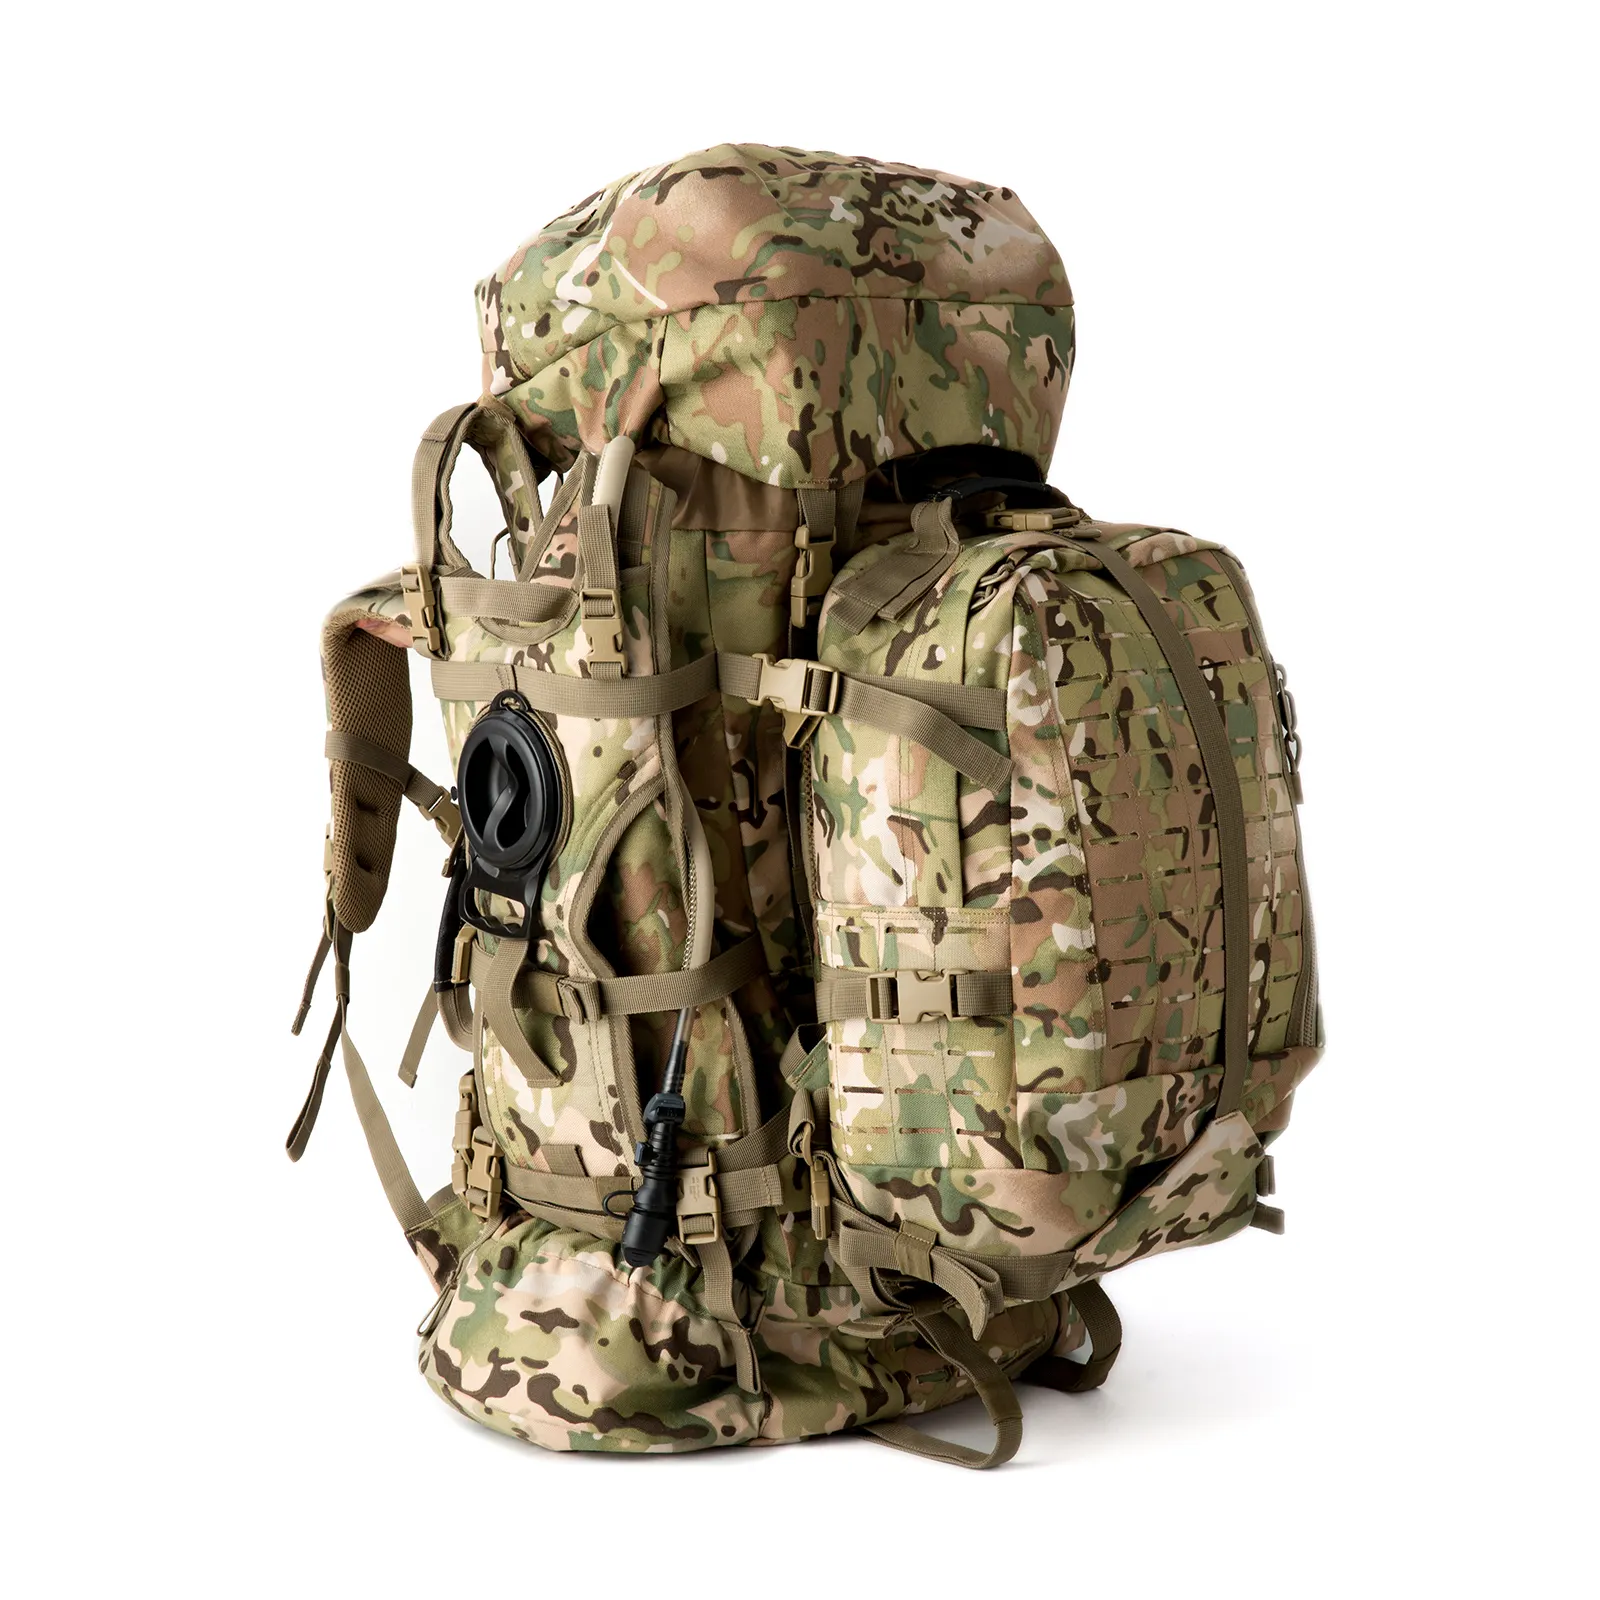 AKmax ILBE Trekking Survival sırt çantası, sıvı alımı sırt çantası ile Multicam taktik bel kemeri, avcılık sırt çantası